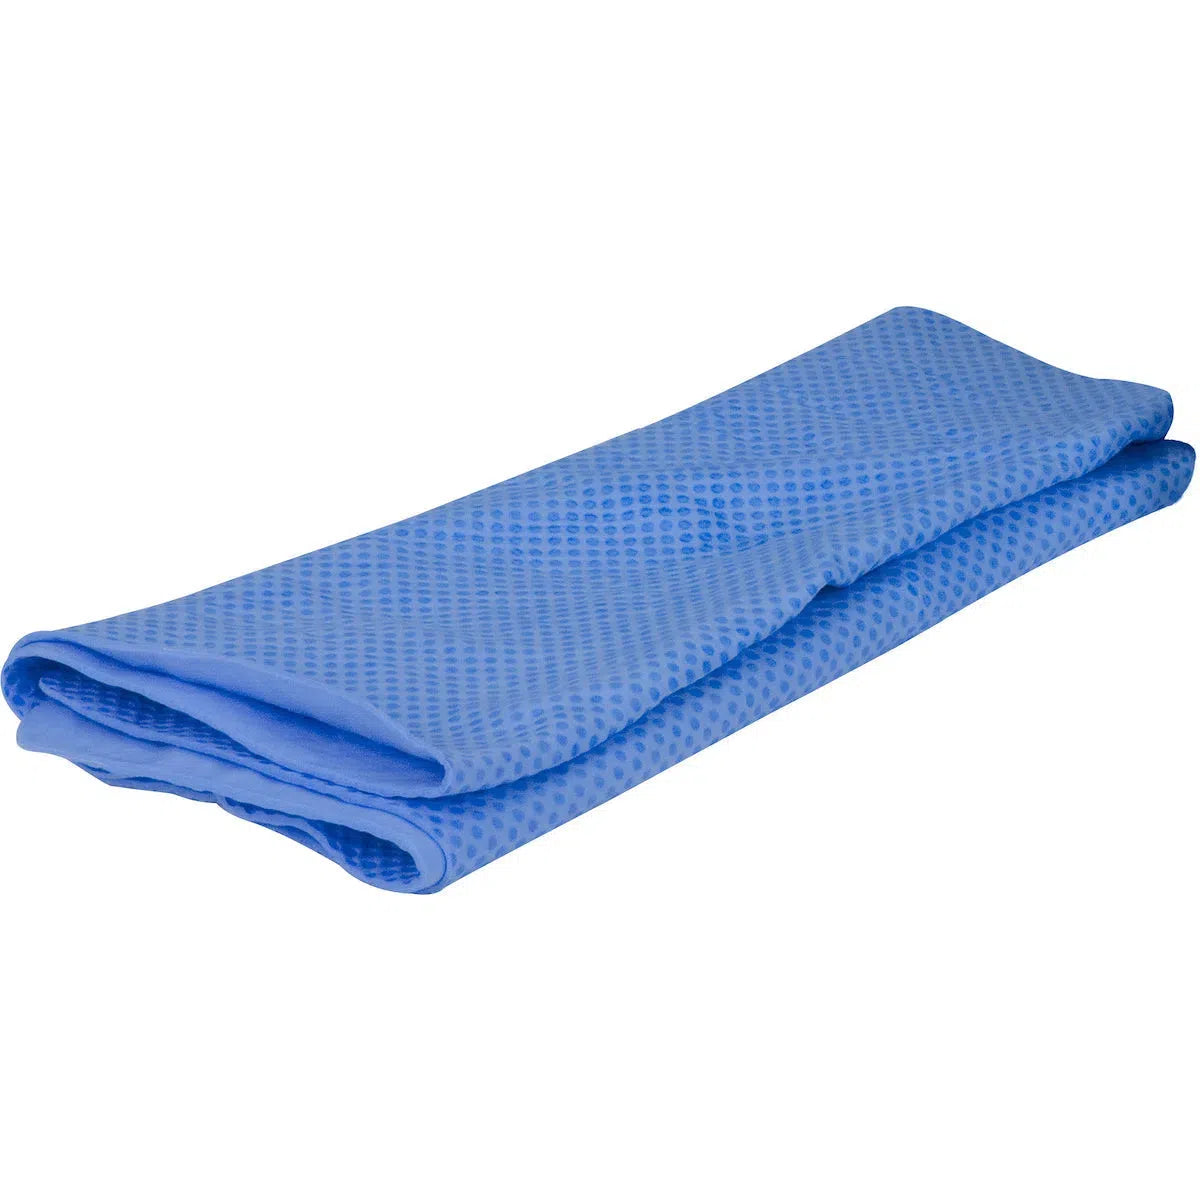 EZ-Cool cooling towel